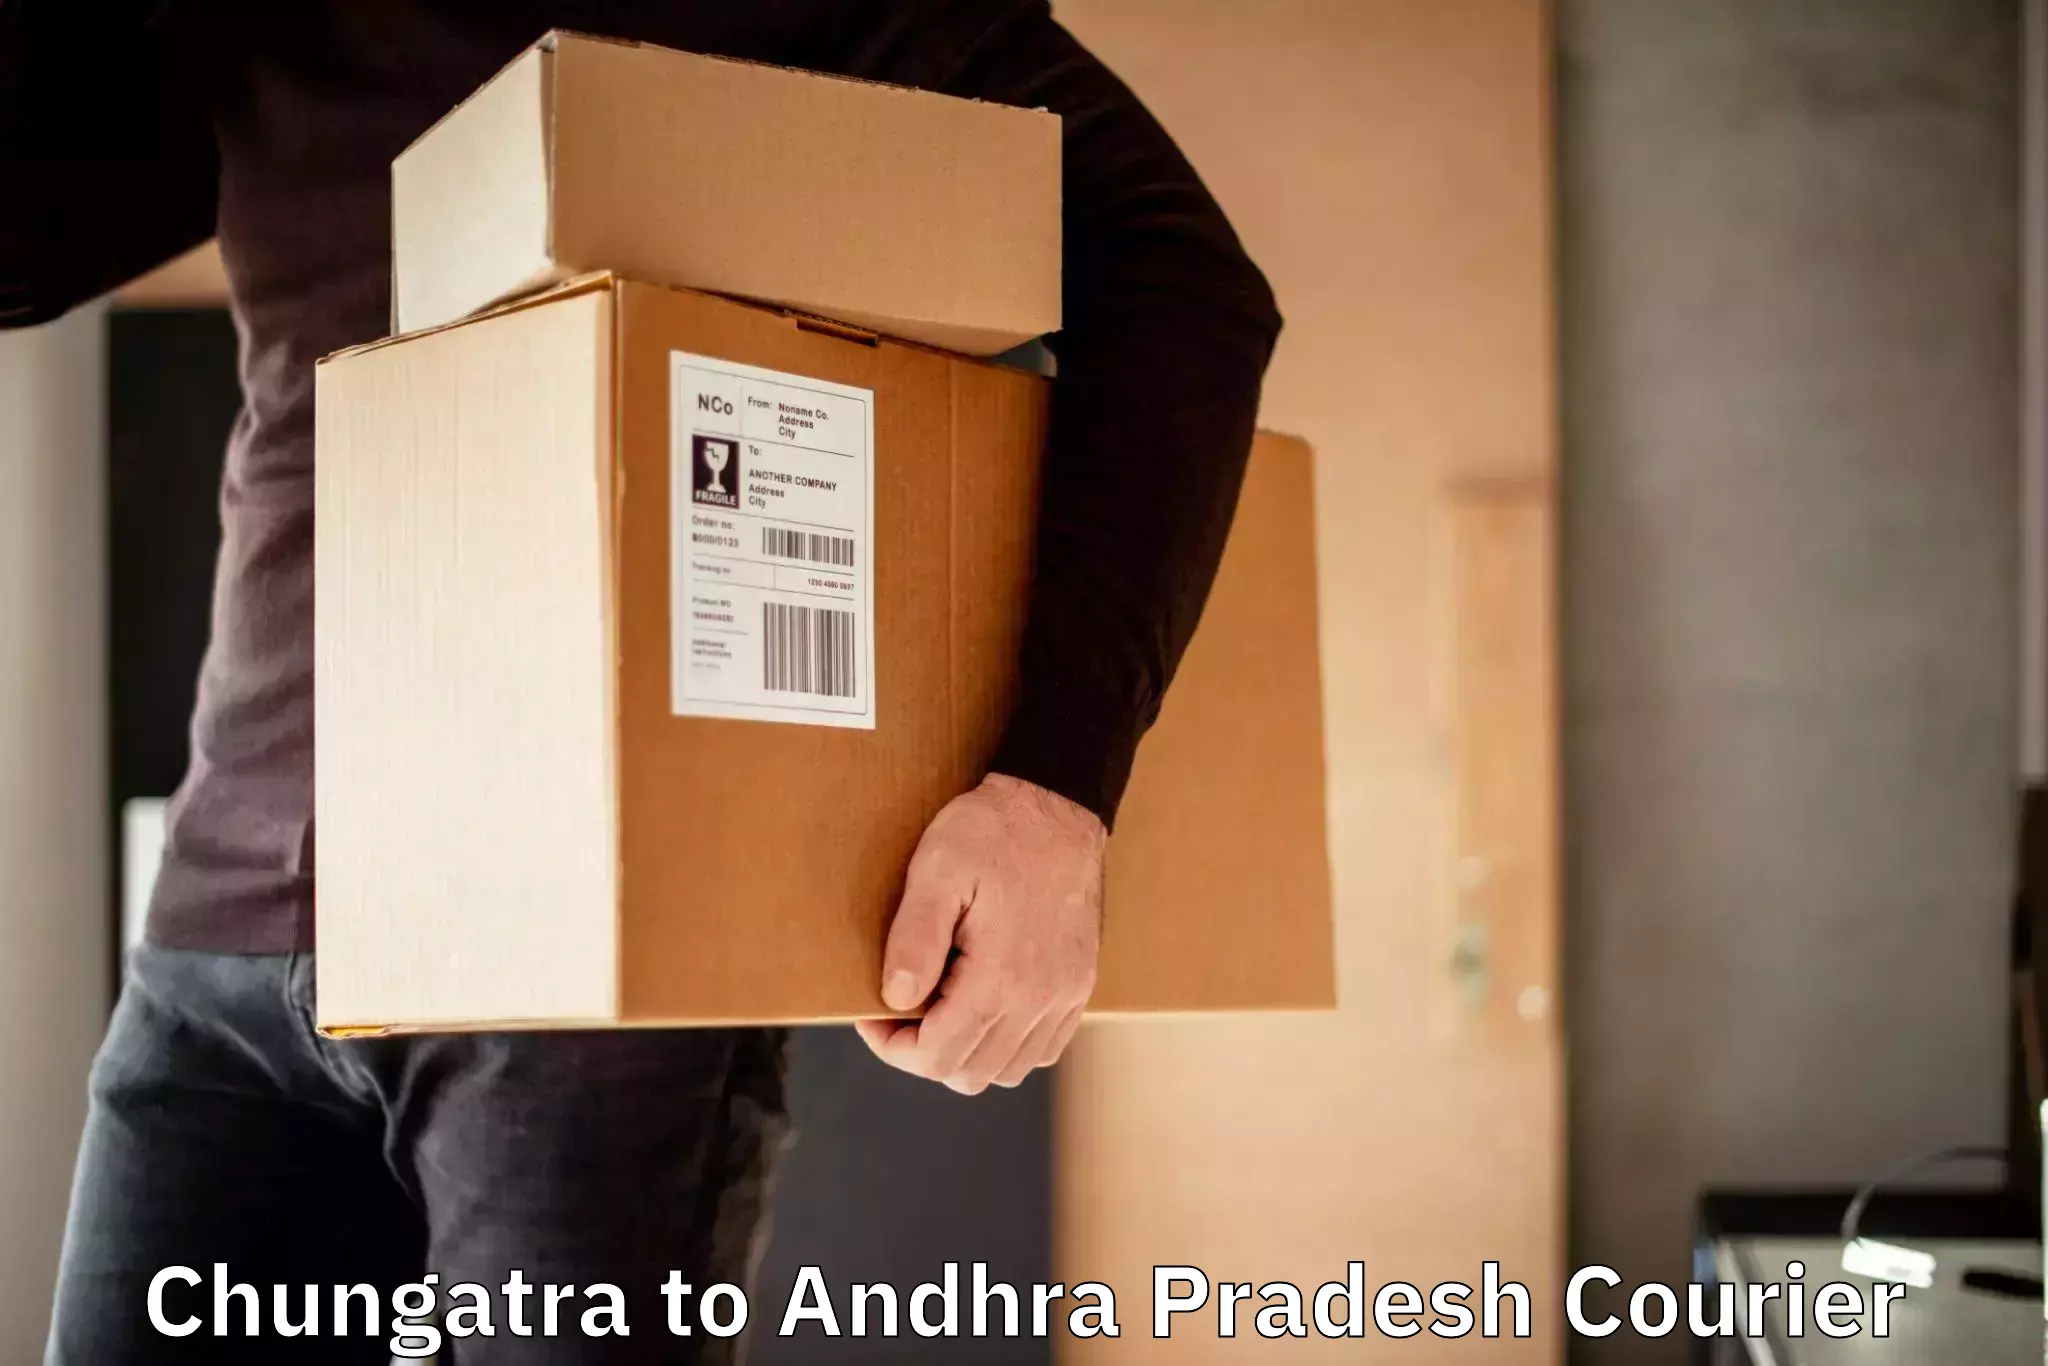 Quick courier services Chungatra to Andhra Pradesh